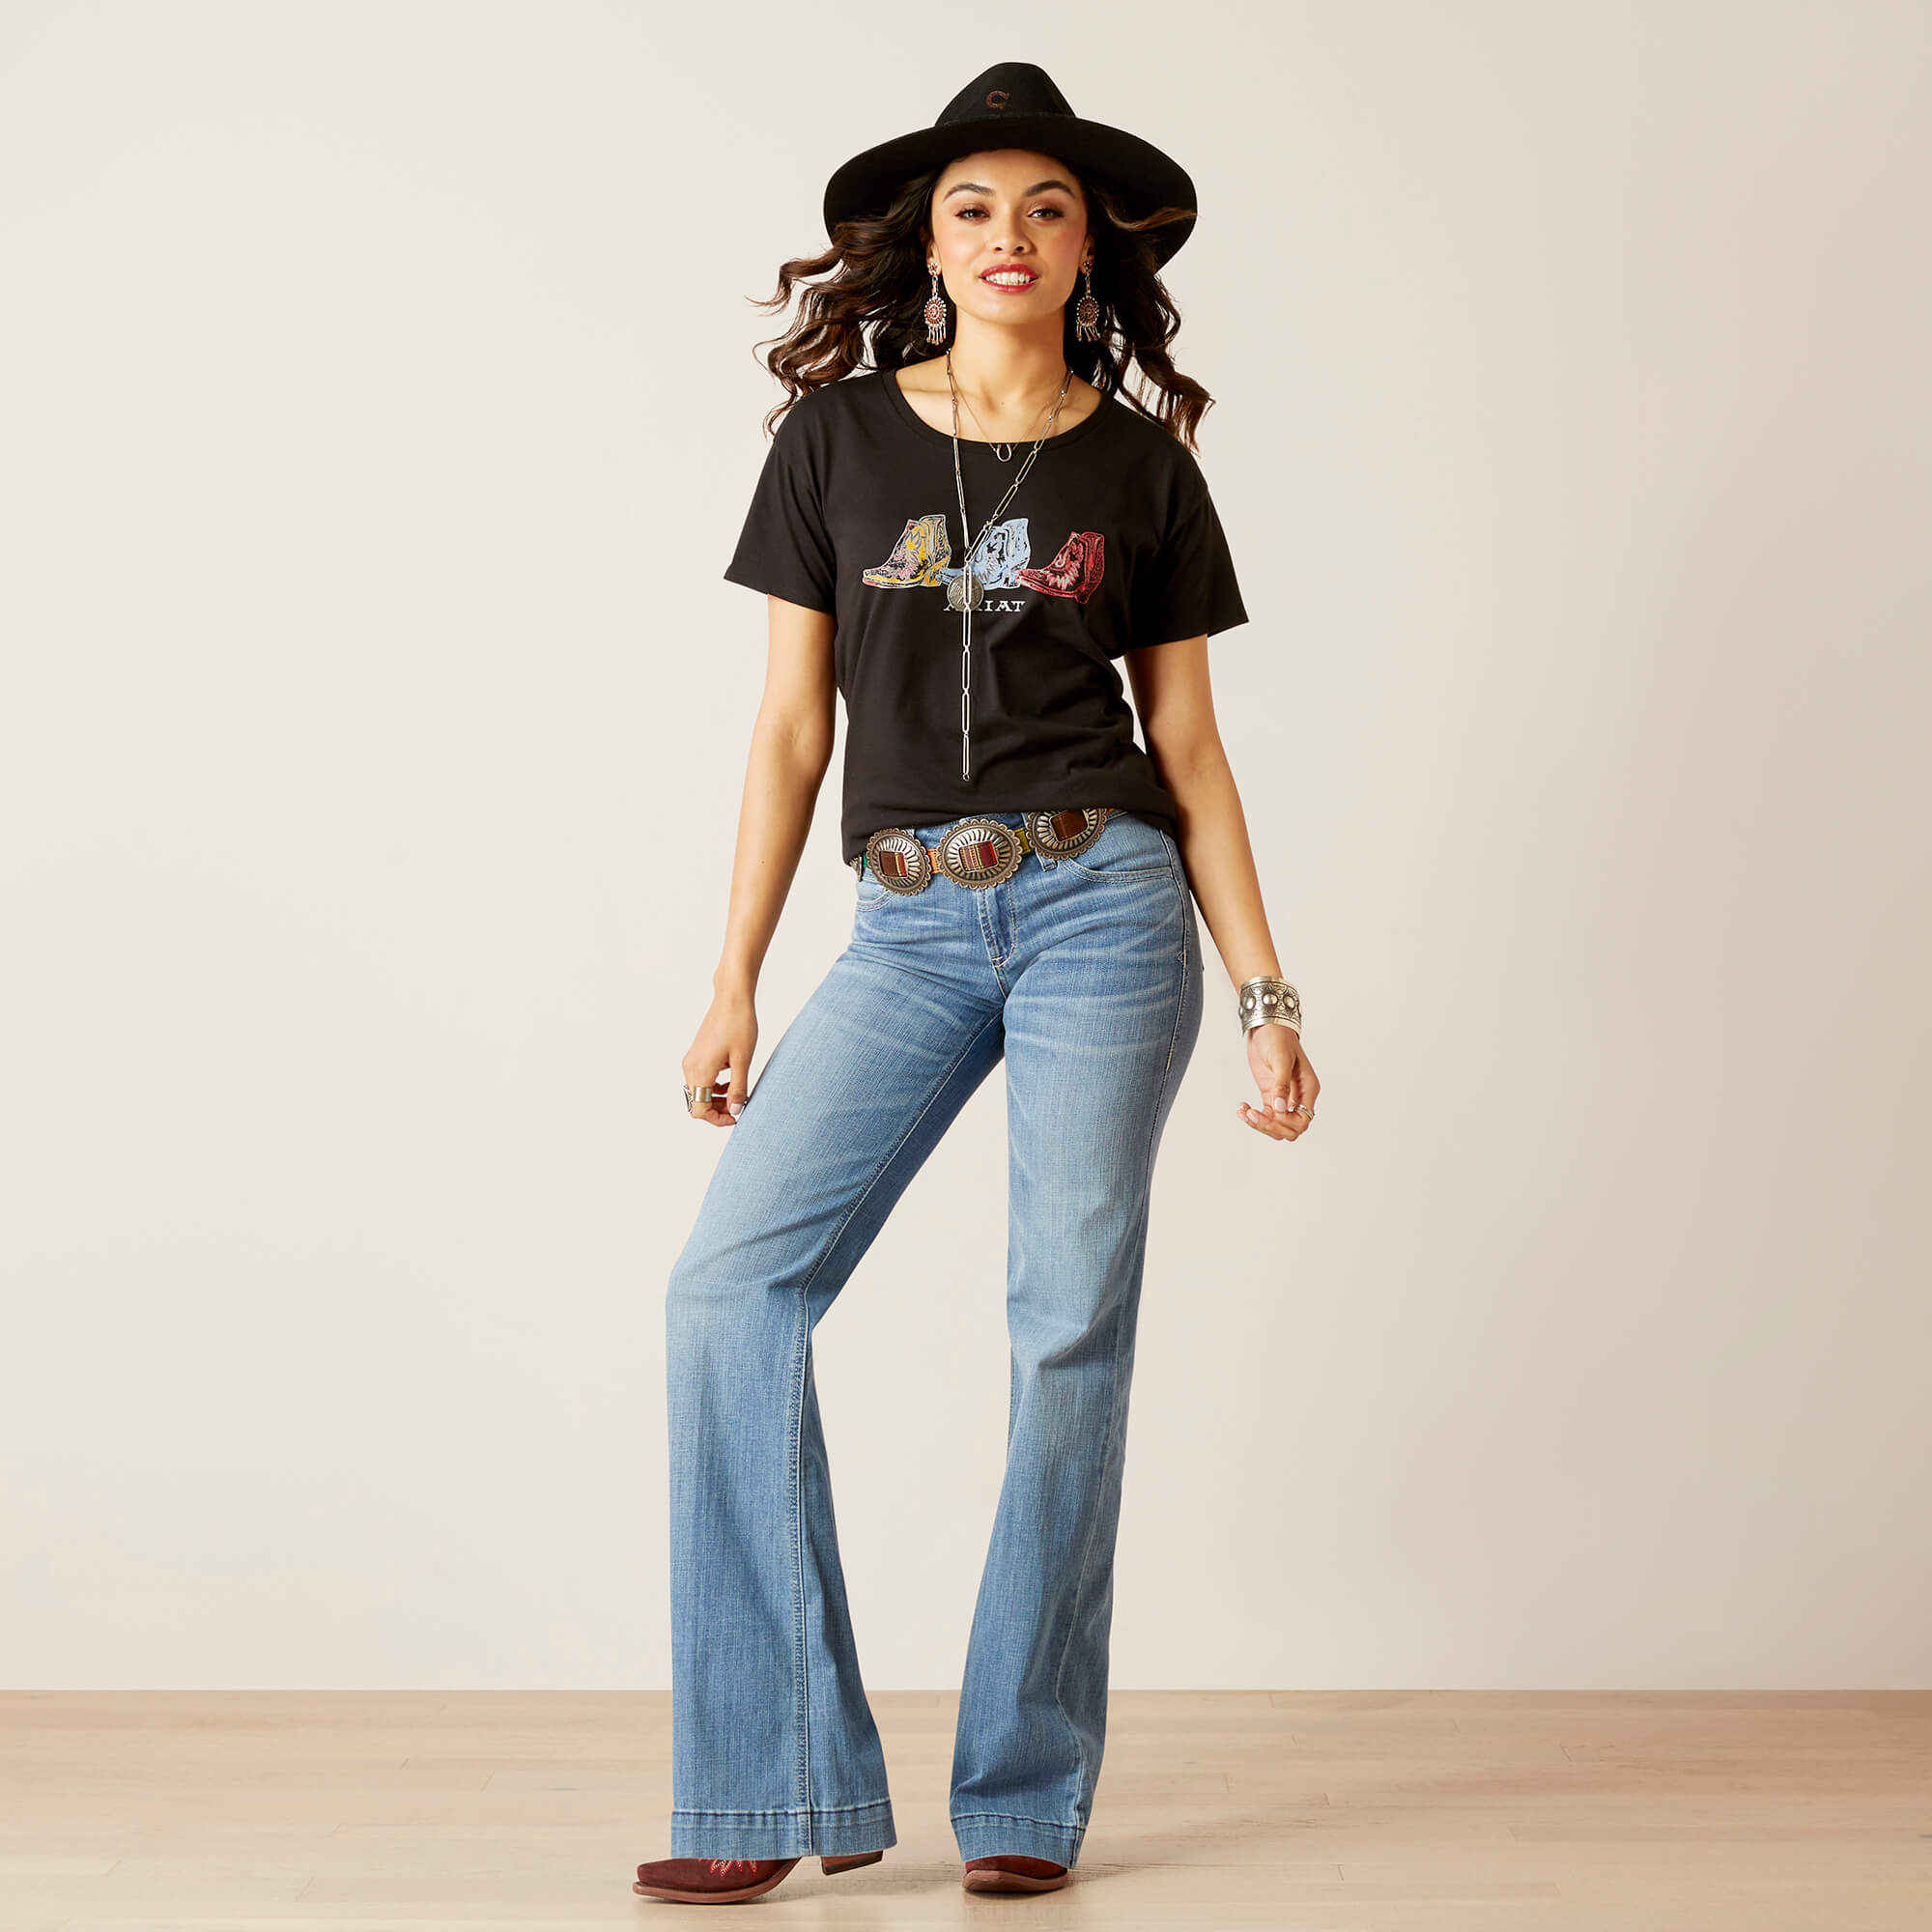 Ariat Women's Pop Boots Graphic T-Shirt